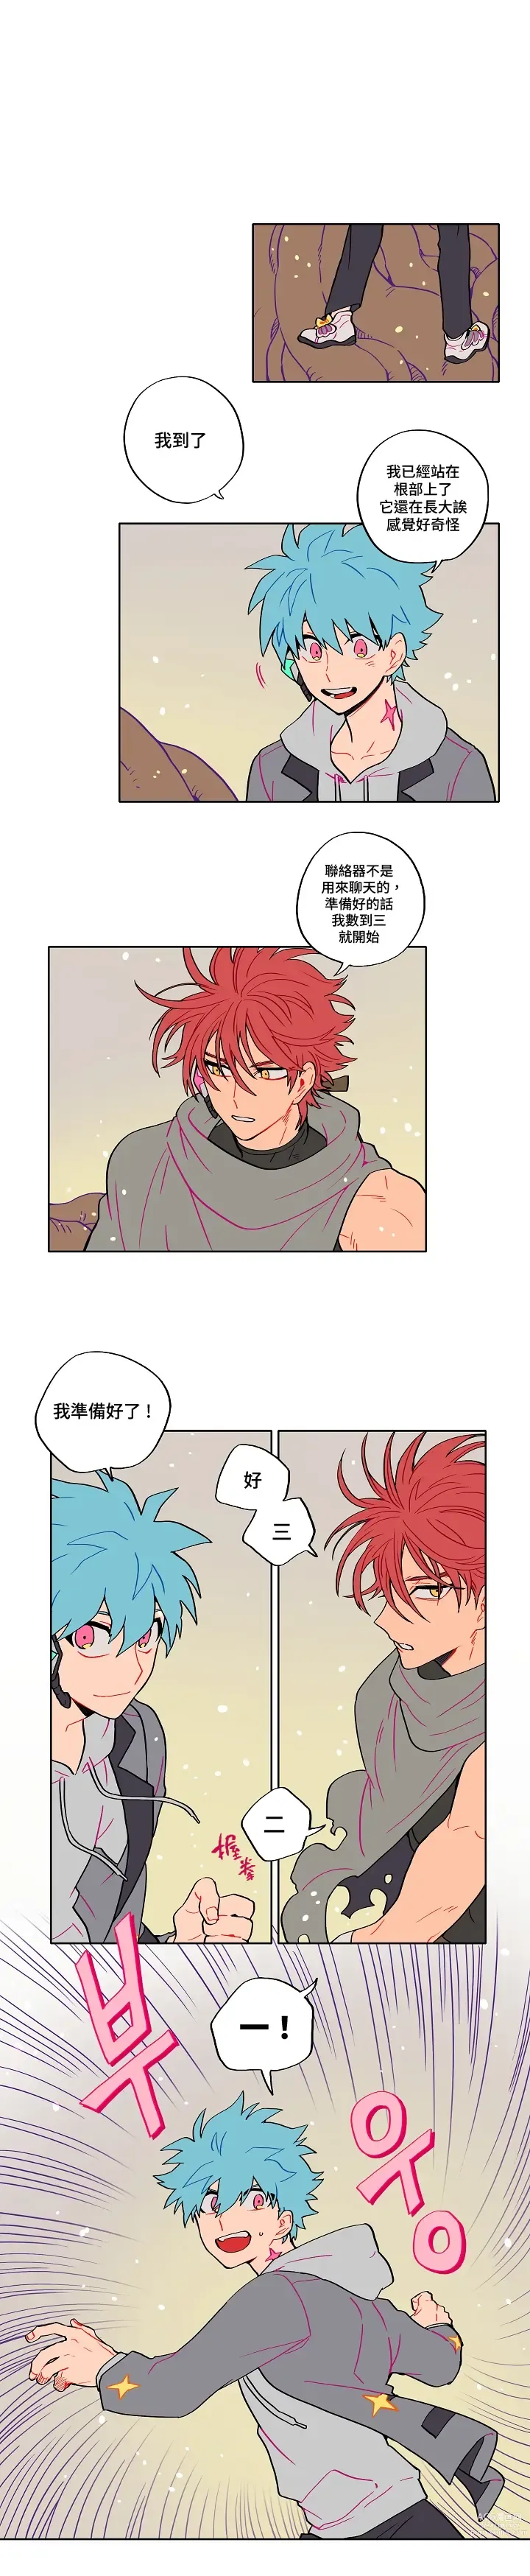 Page 2 of manga 宙与剑 02-03